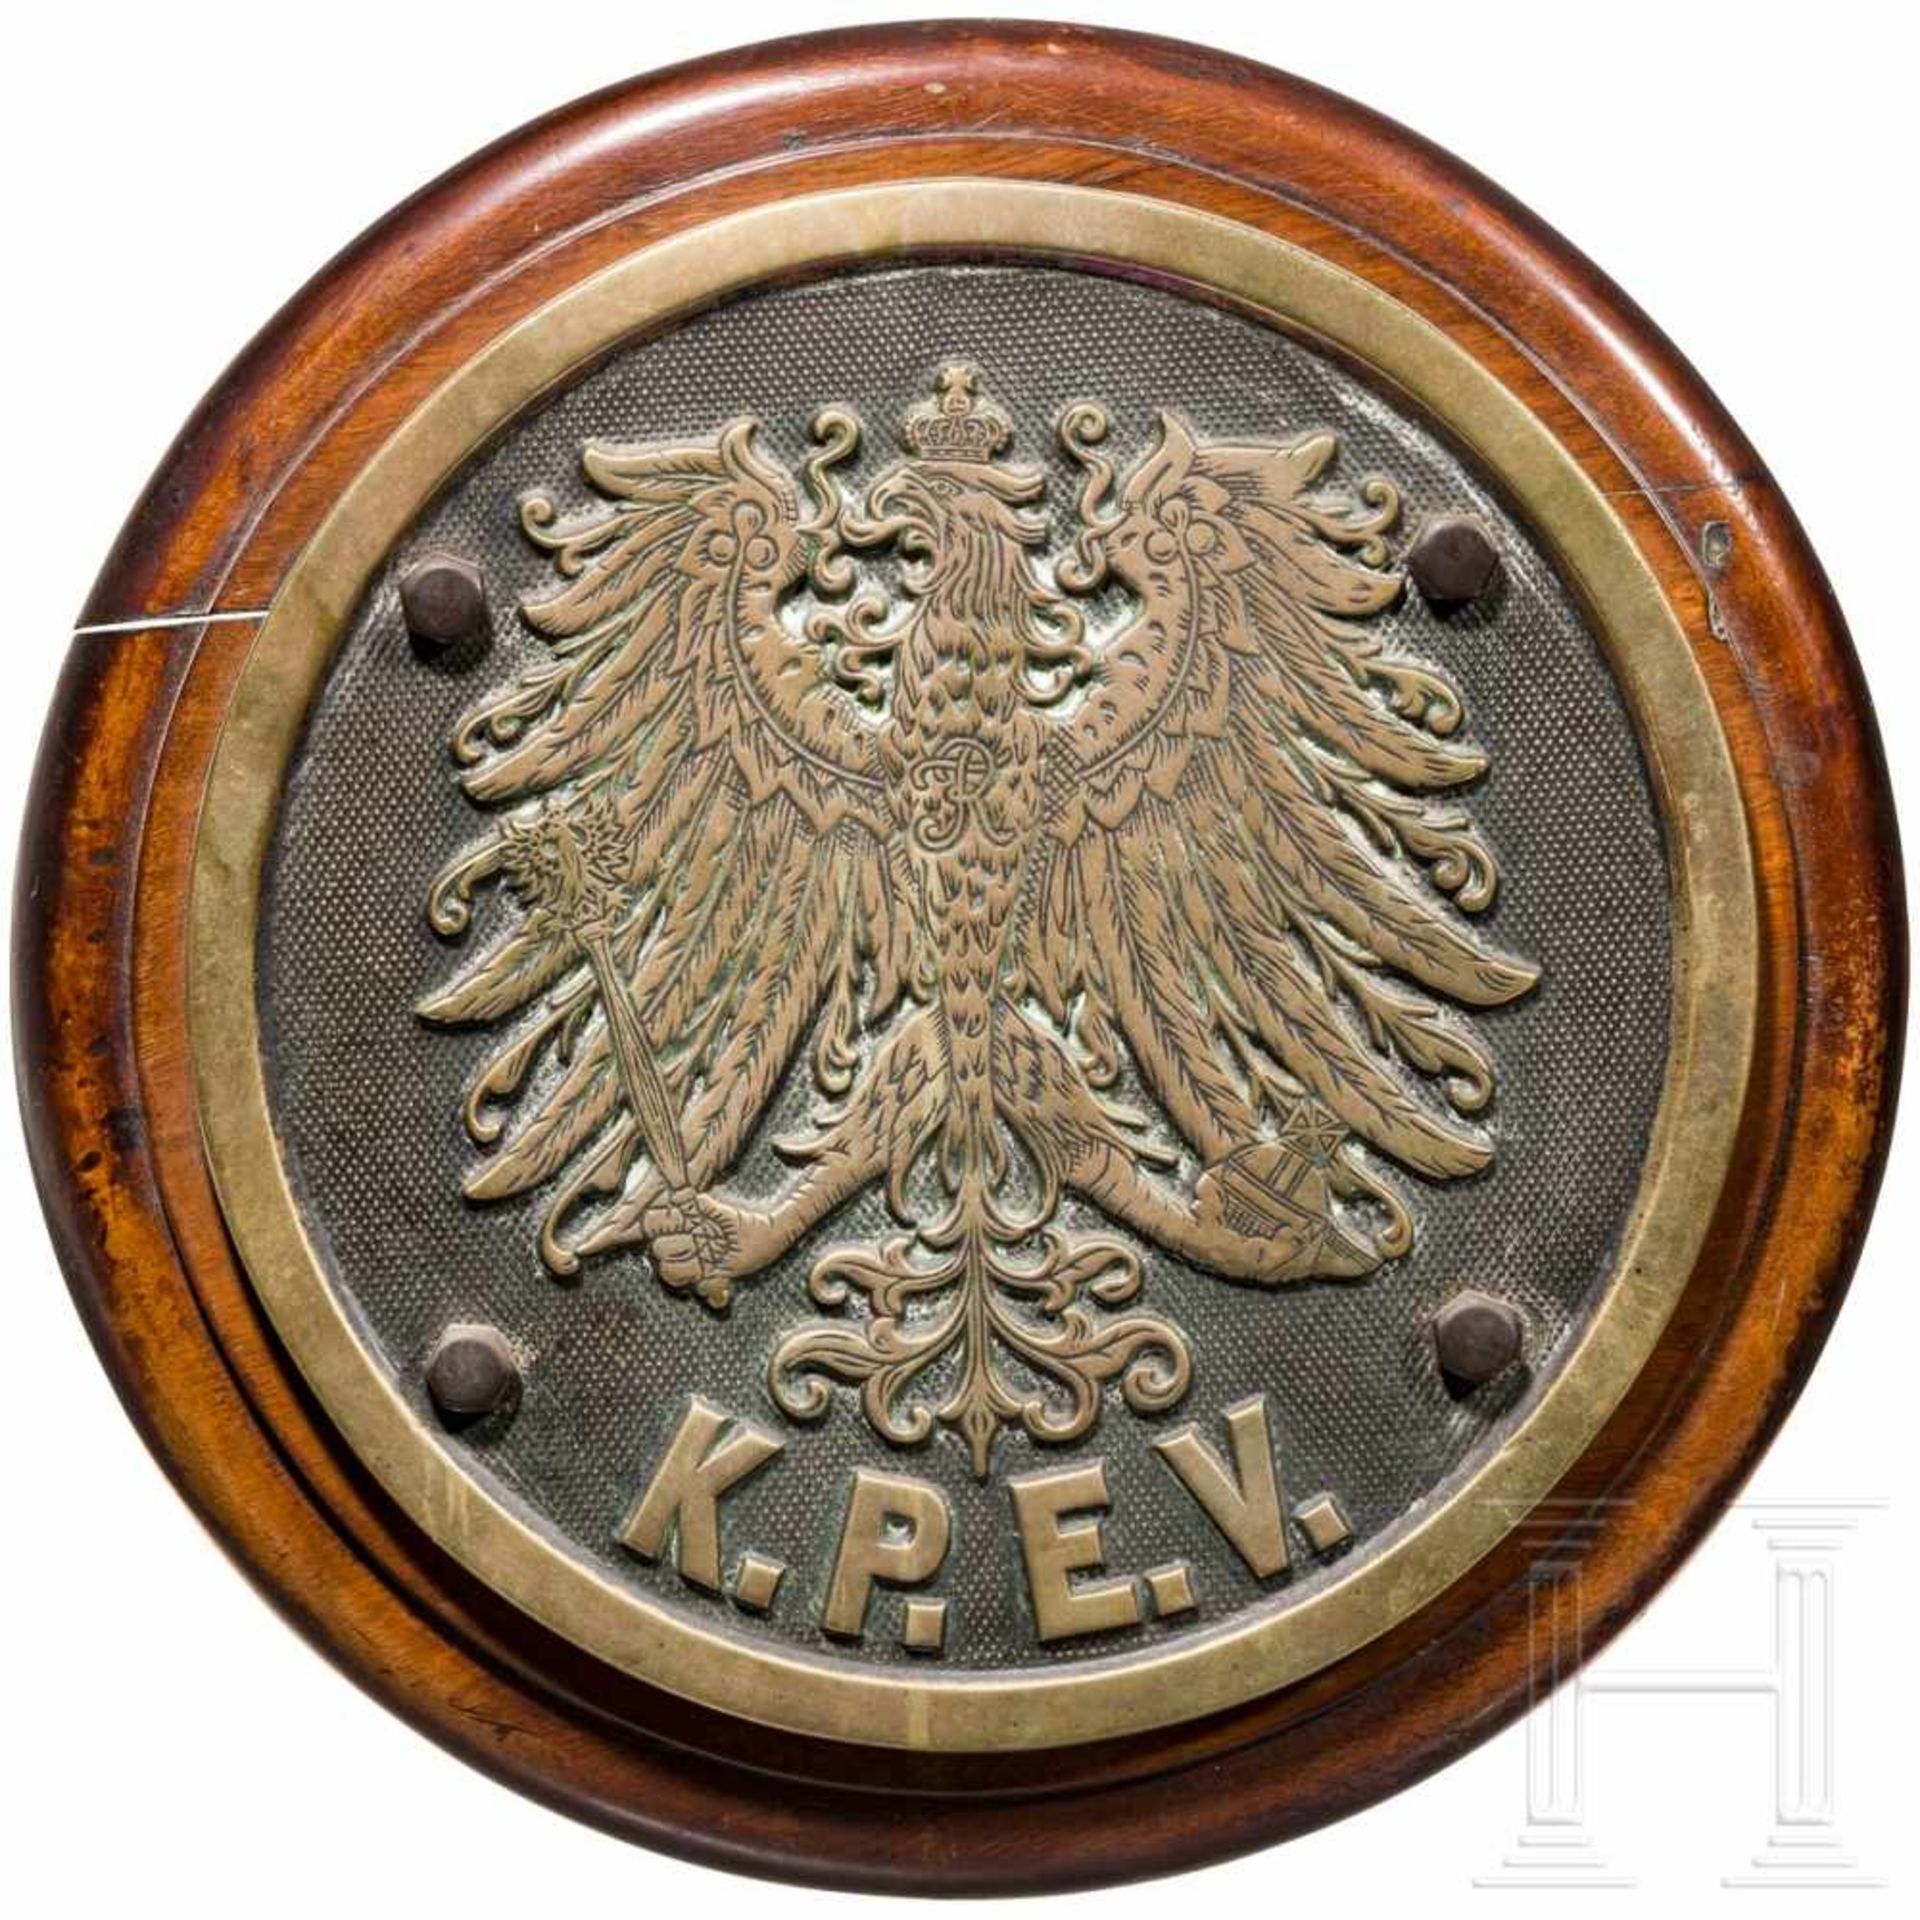 Lokschild der Königlich Preußischen Eisenbahn Verwaltung, Preußen, um 1900